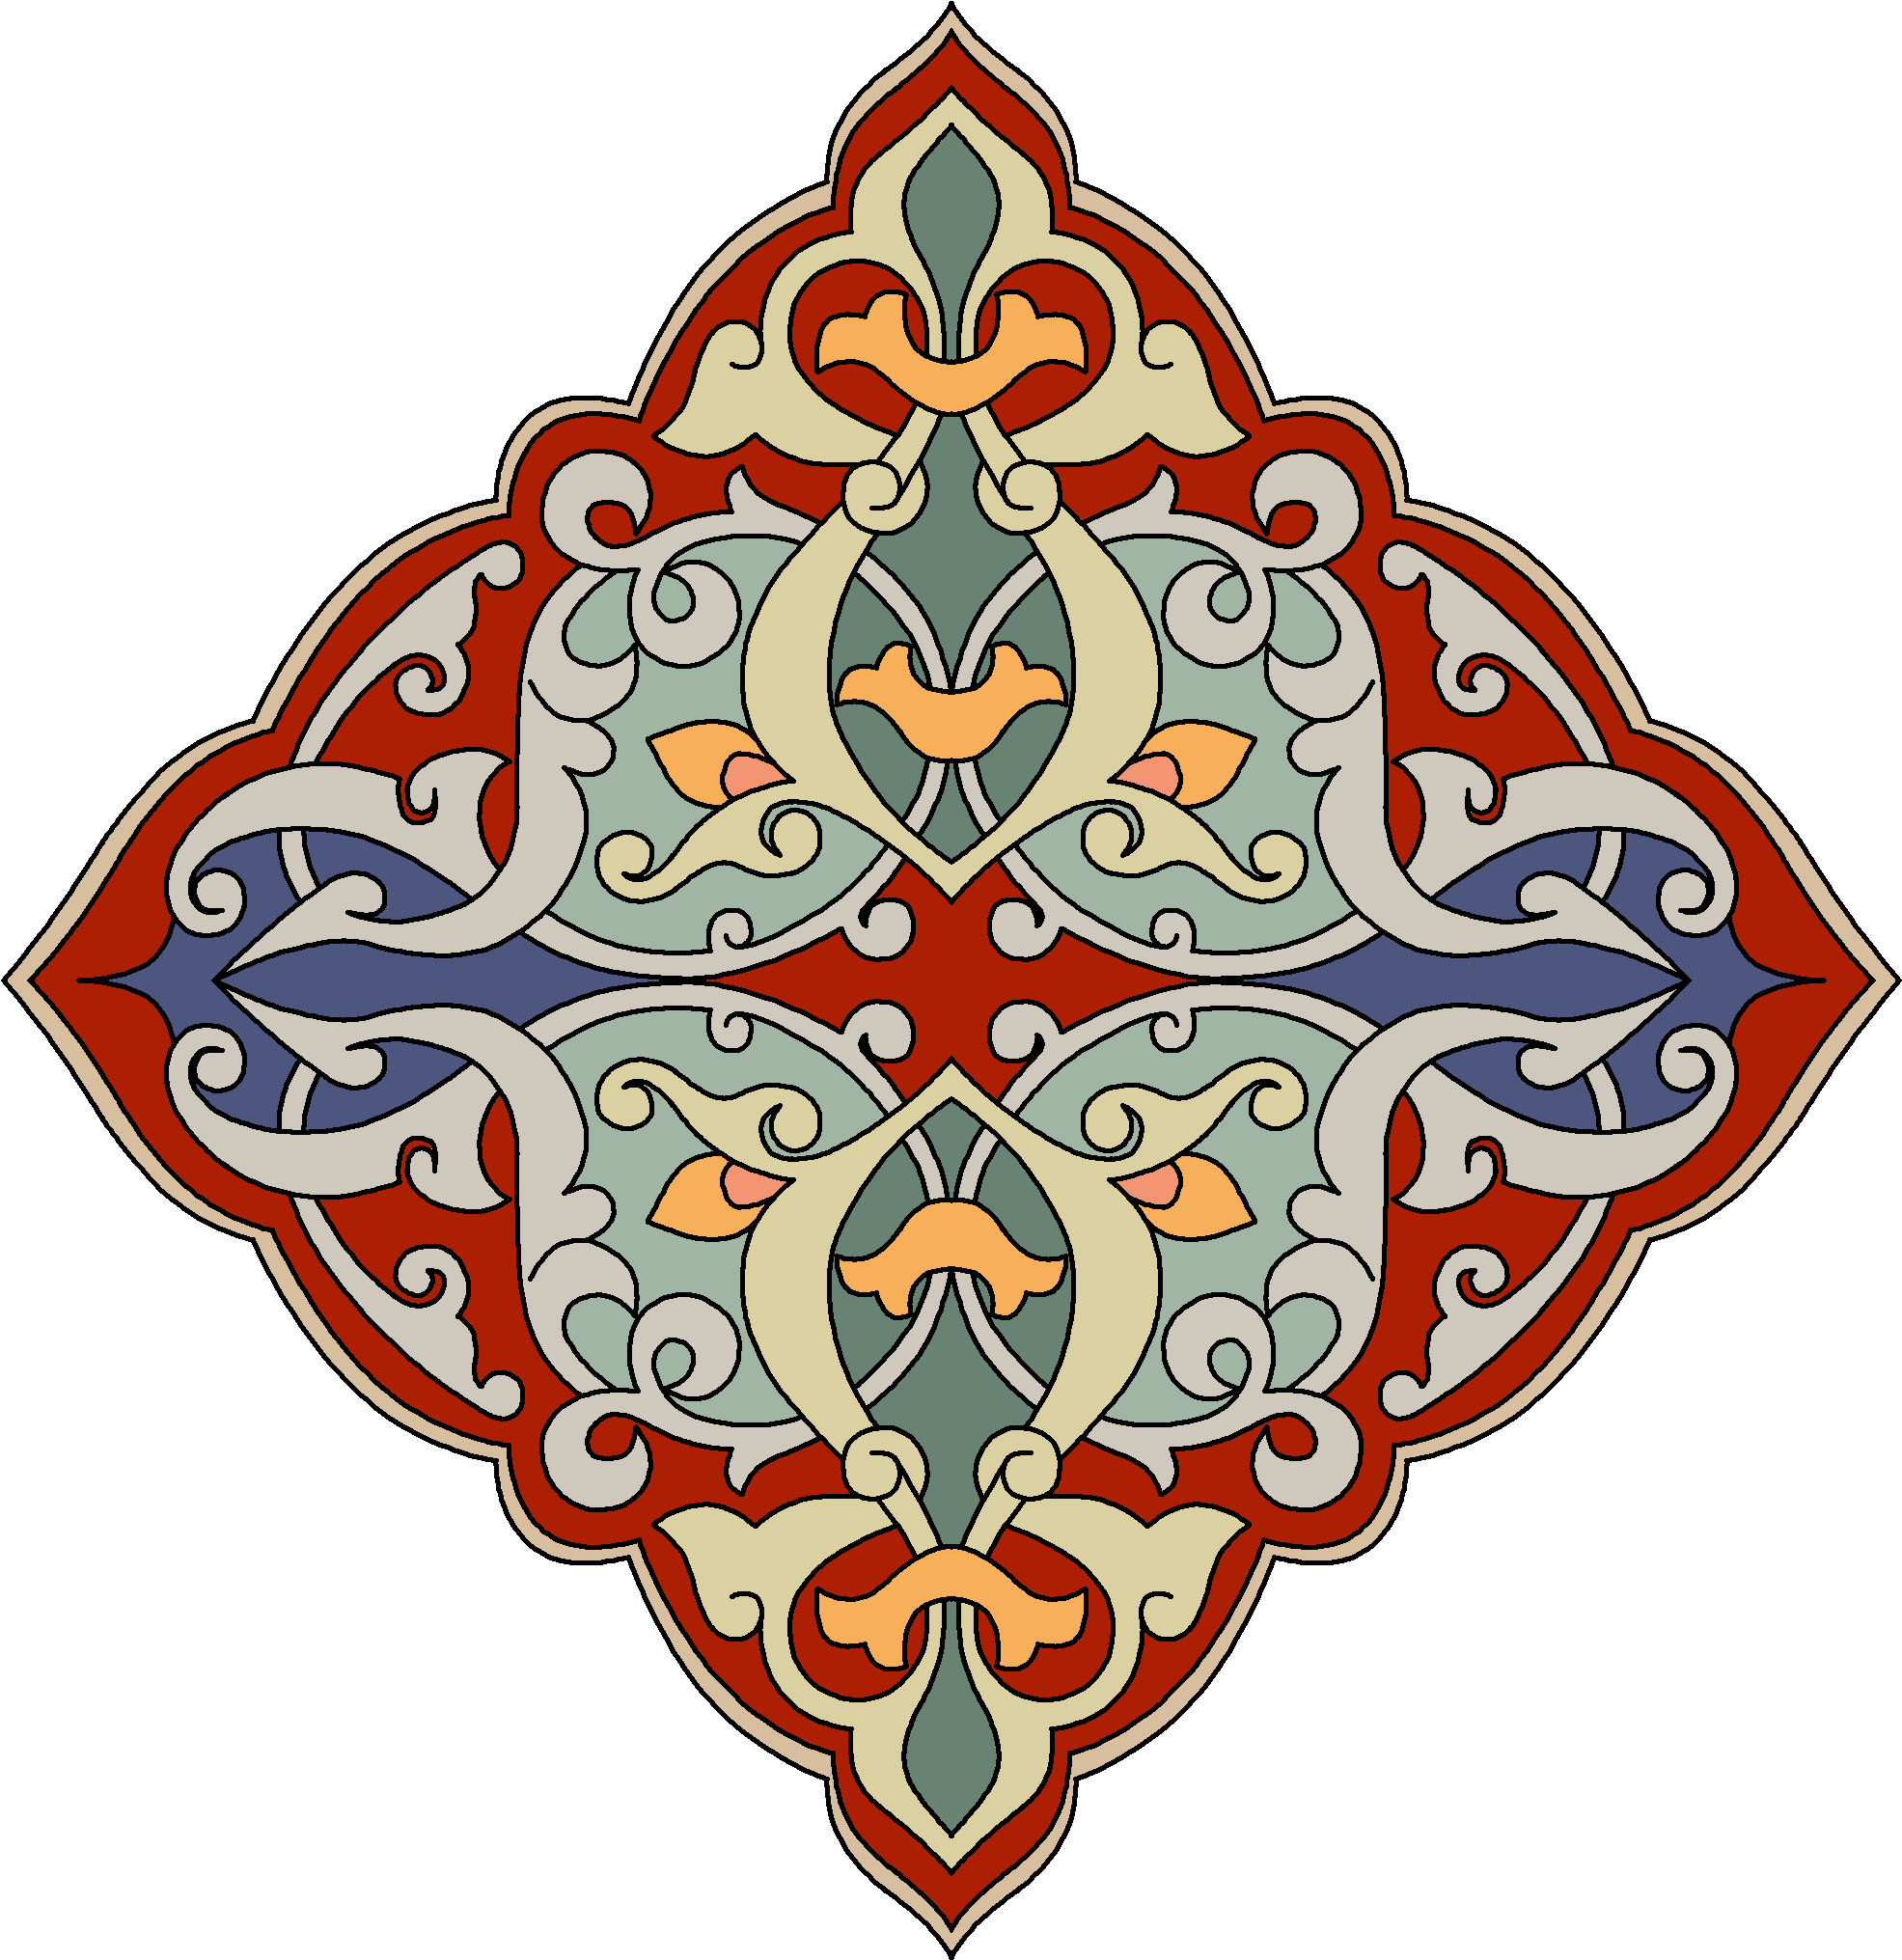 Узбекский рисунок. Арабский Багдади орнамент. Исламский орнамент Арабеска. Узбекистан нац орнамент вектор. Национальный орнамент Таджикистана вектор.